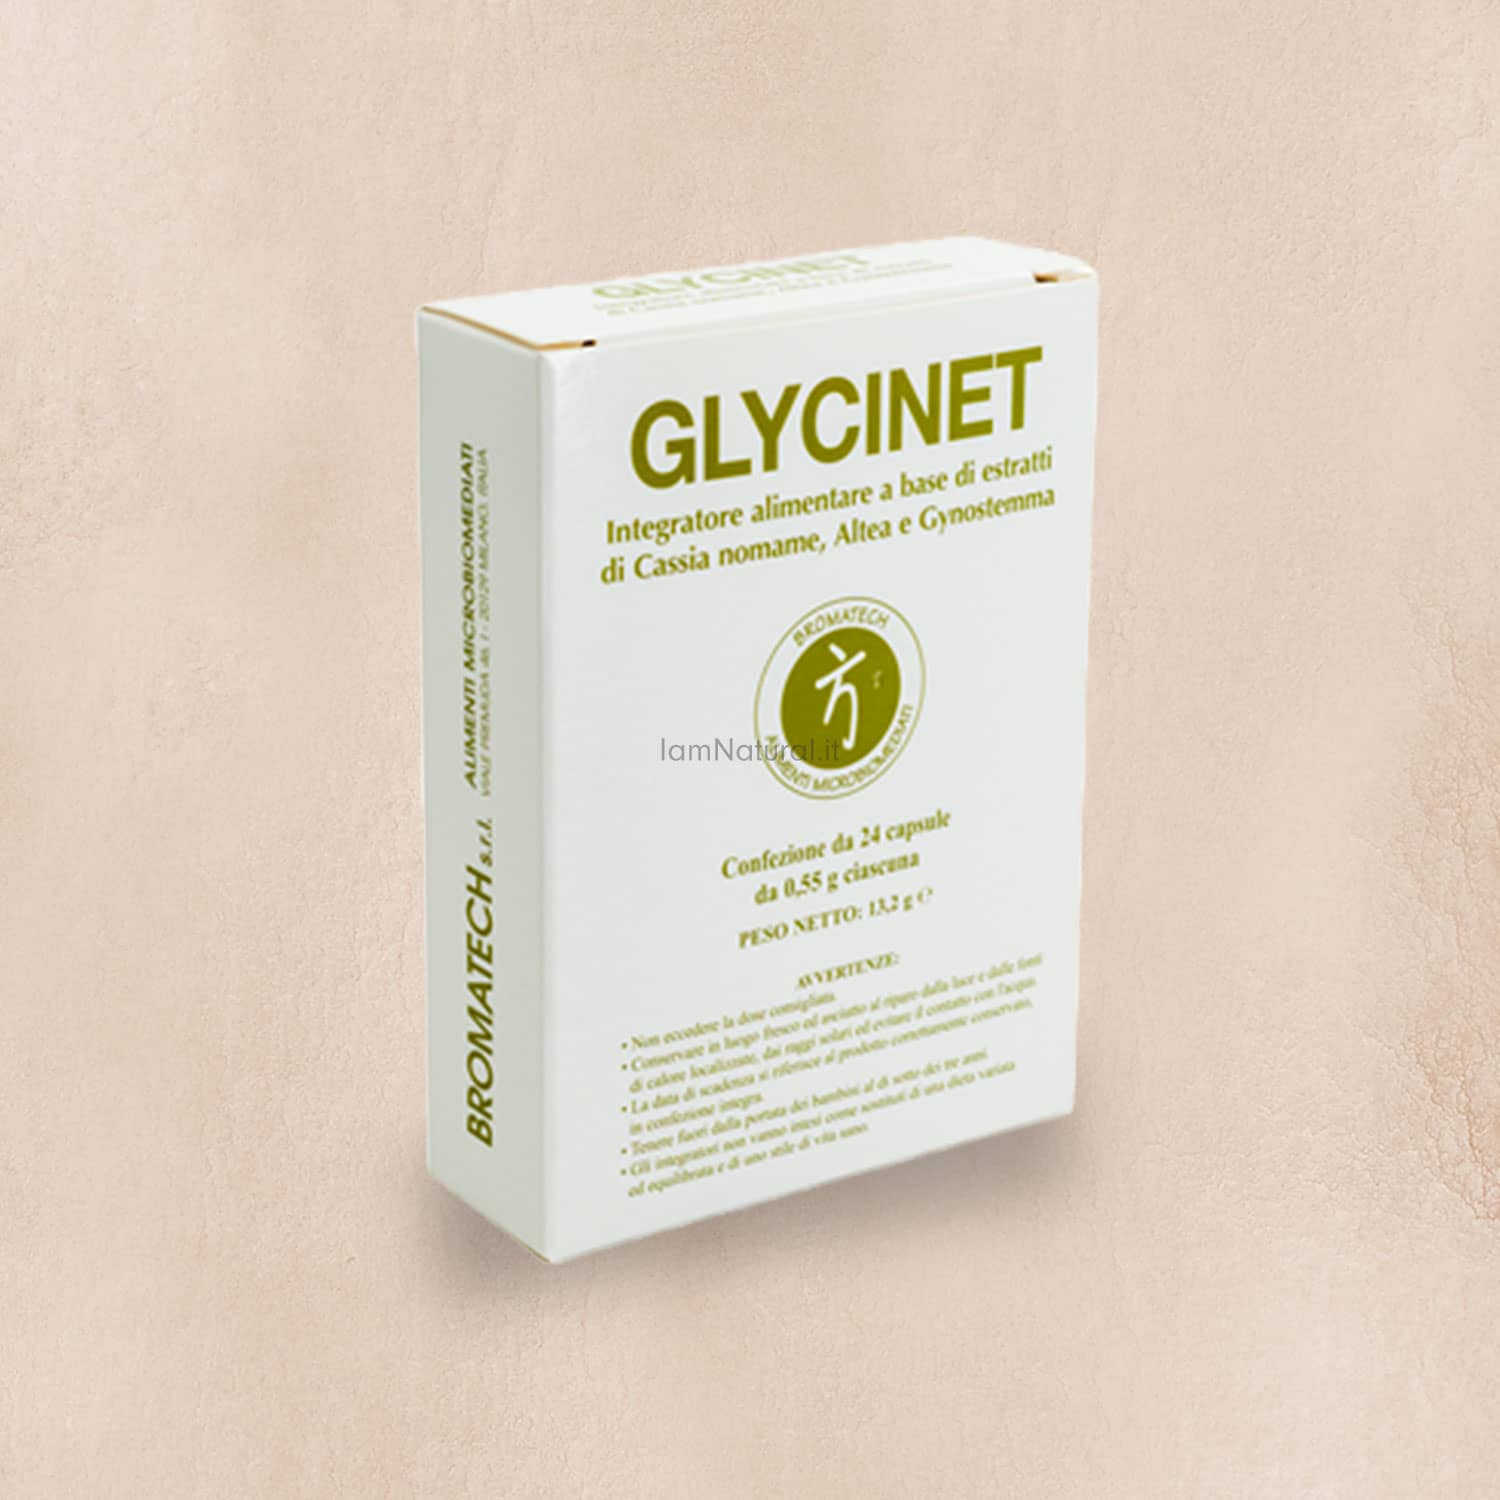 glycinet bromatech